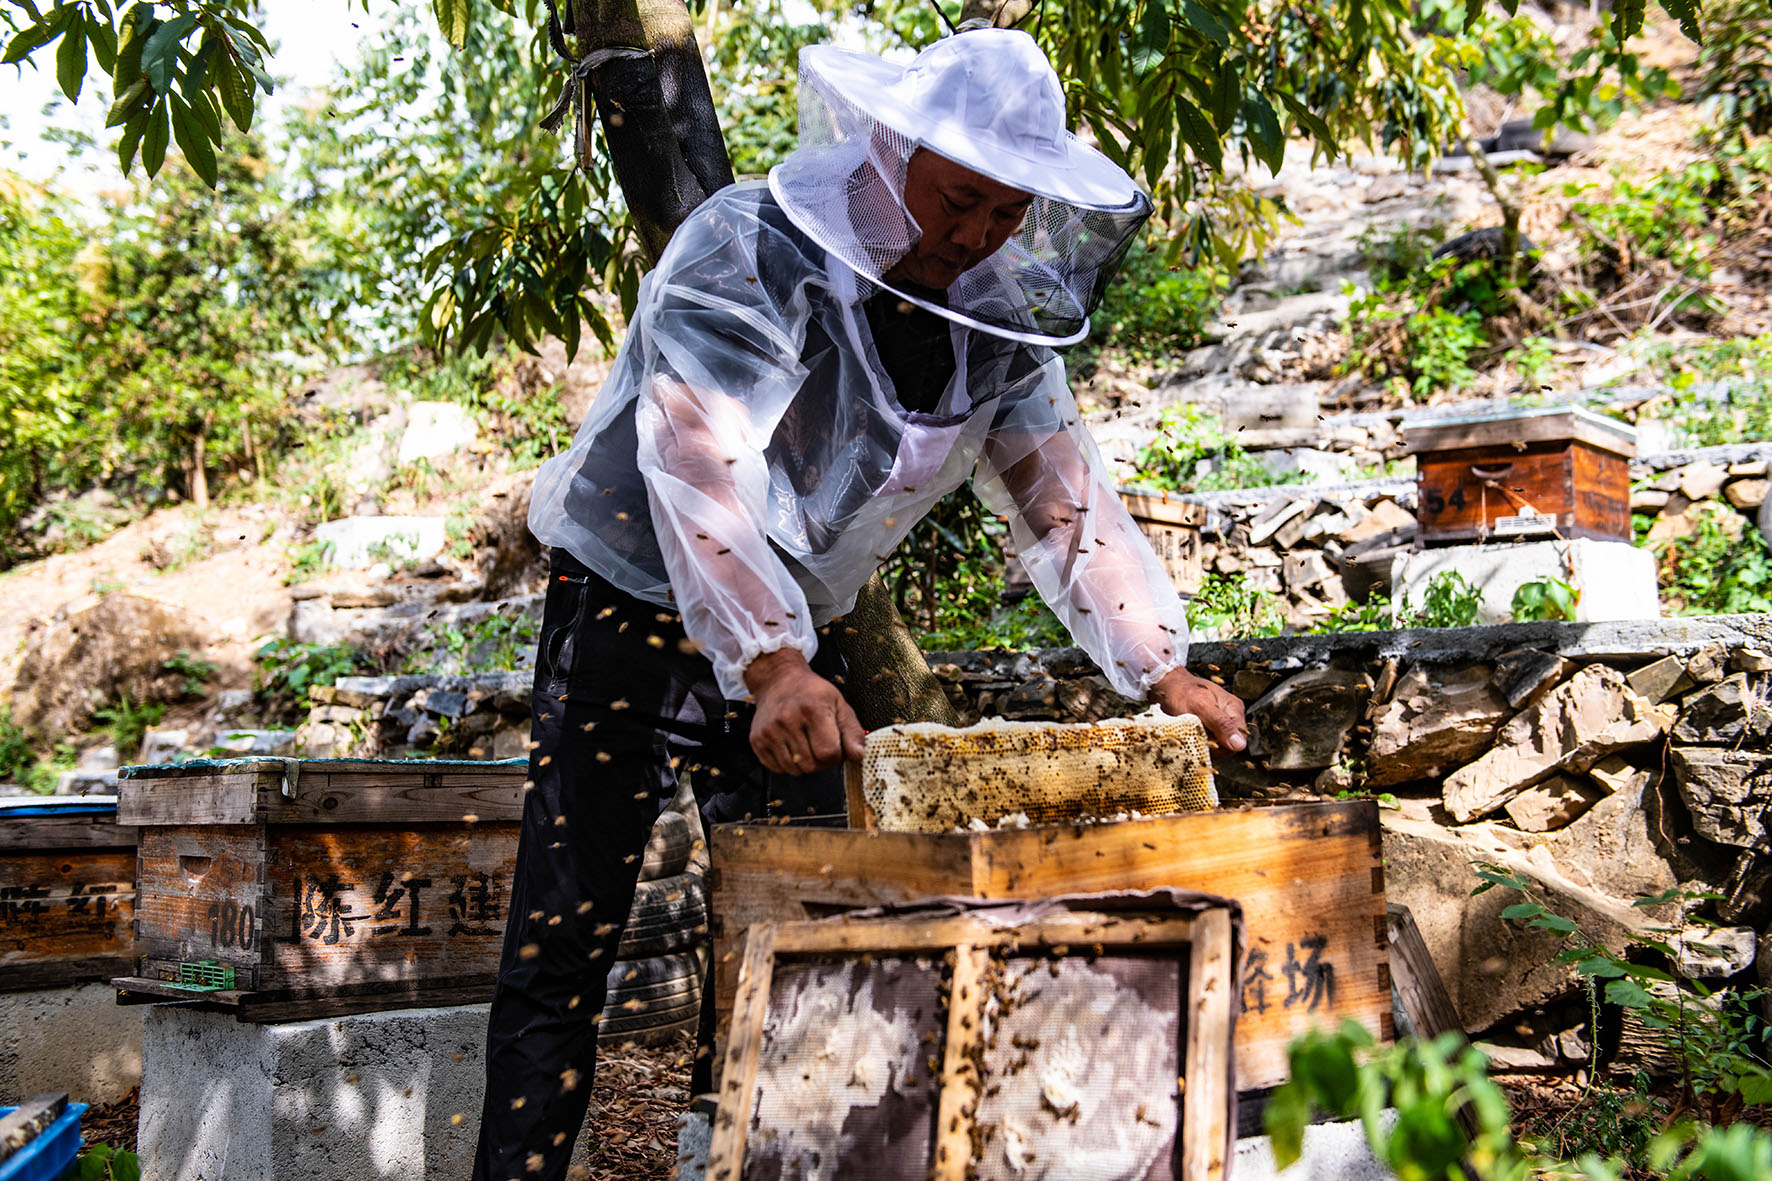 创新养蜂模式 助农增收致富-开化新闻网